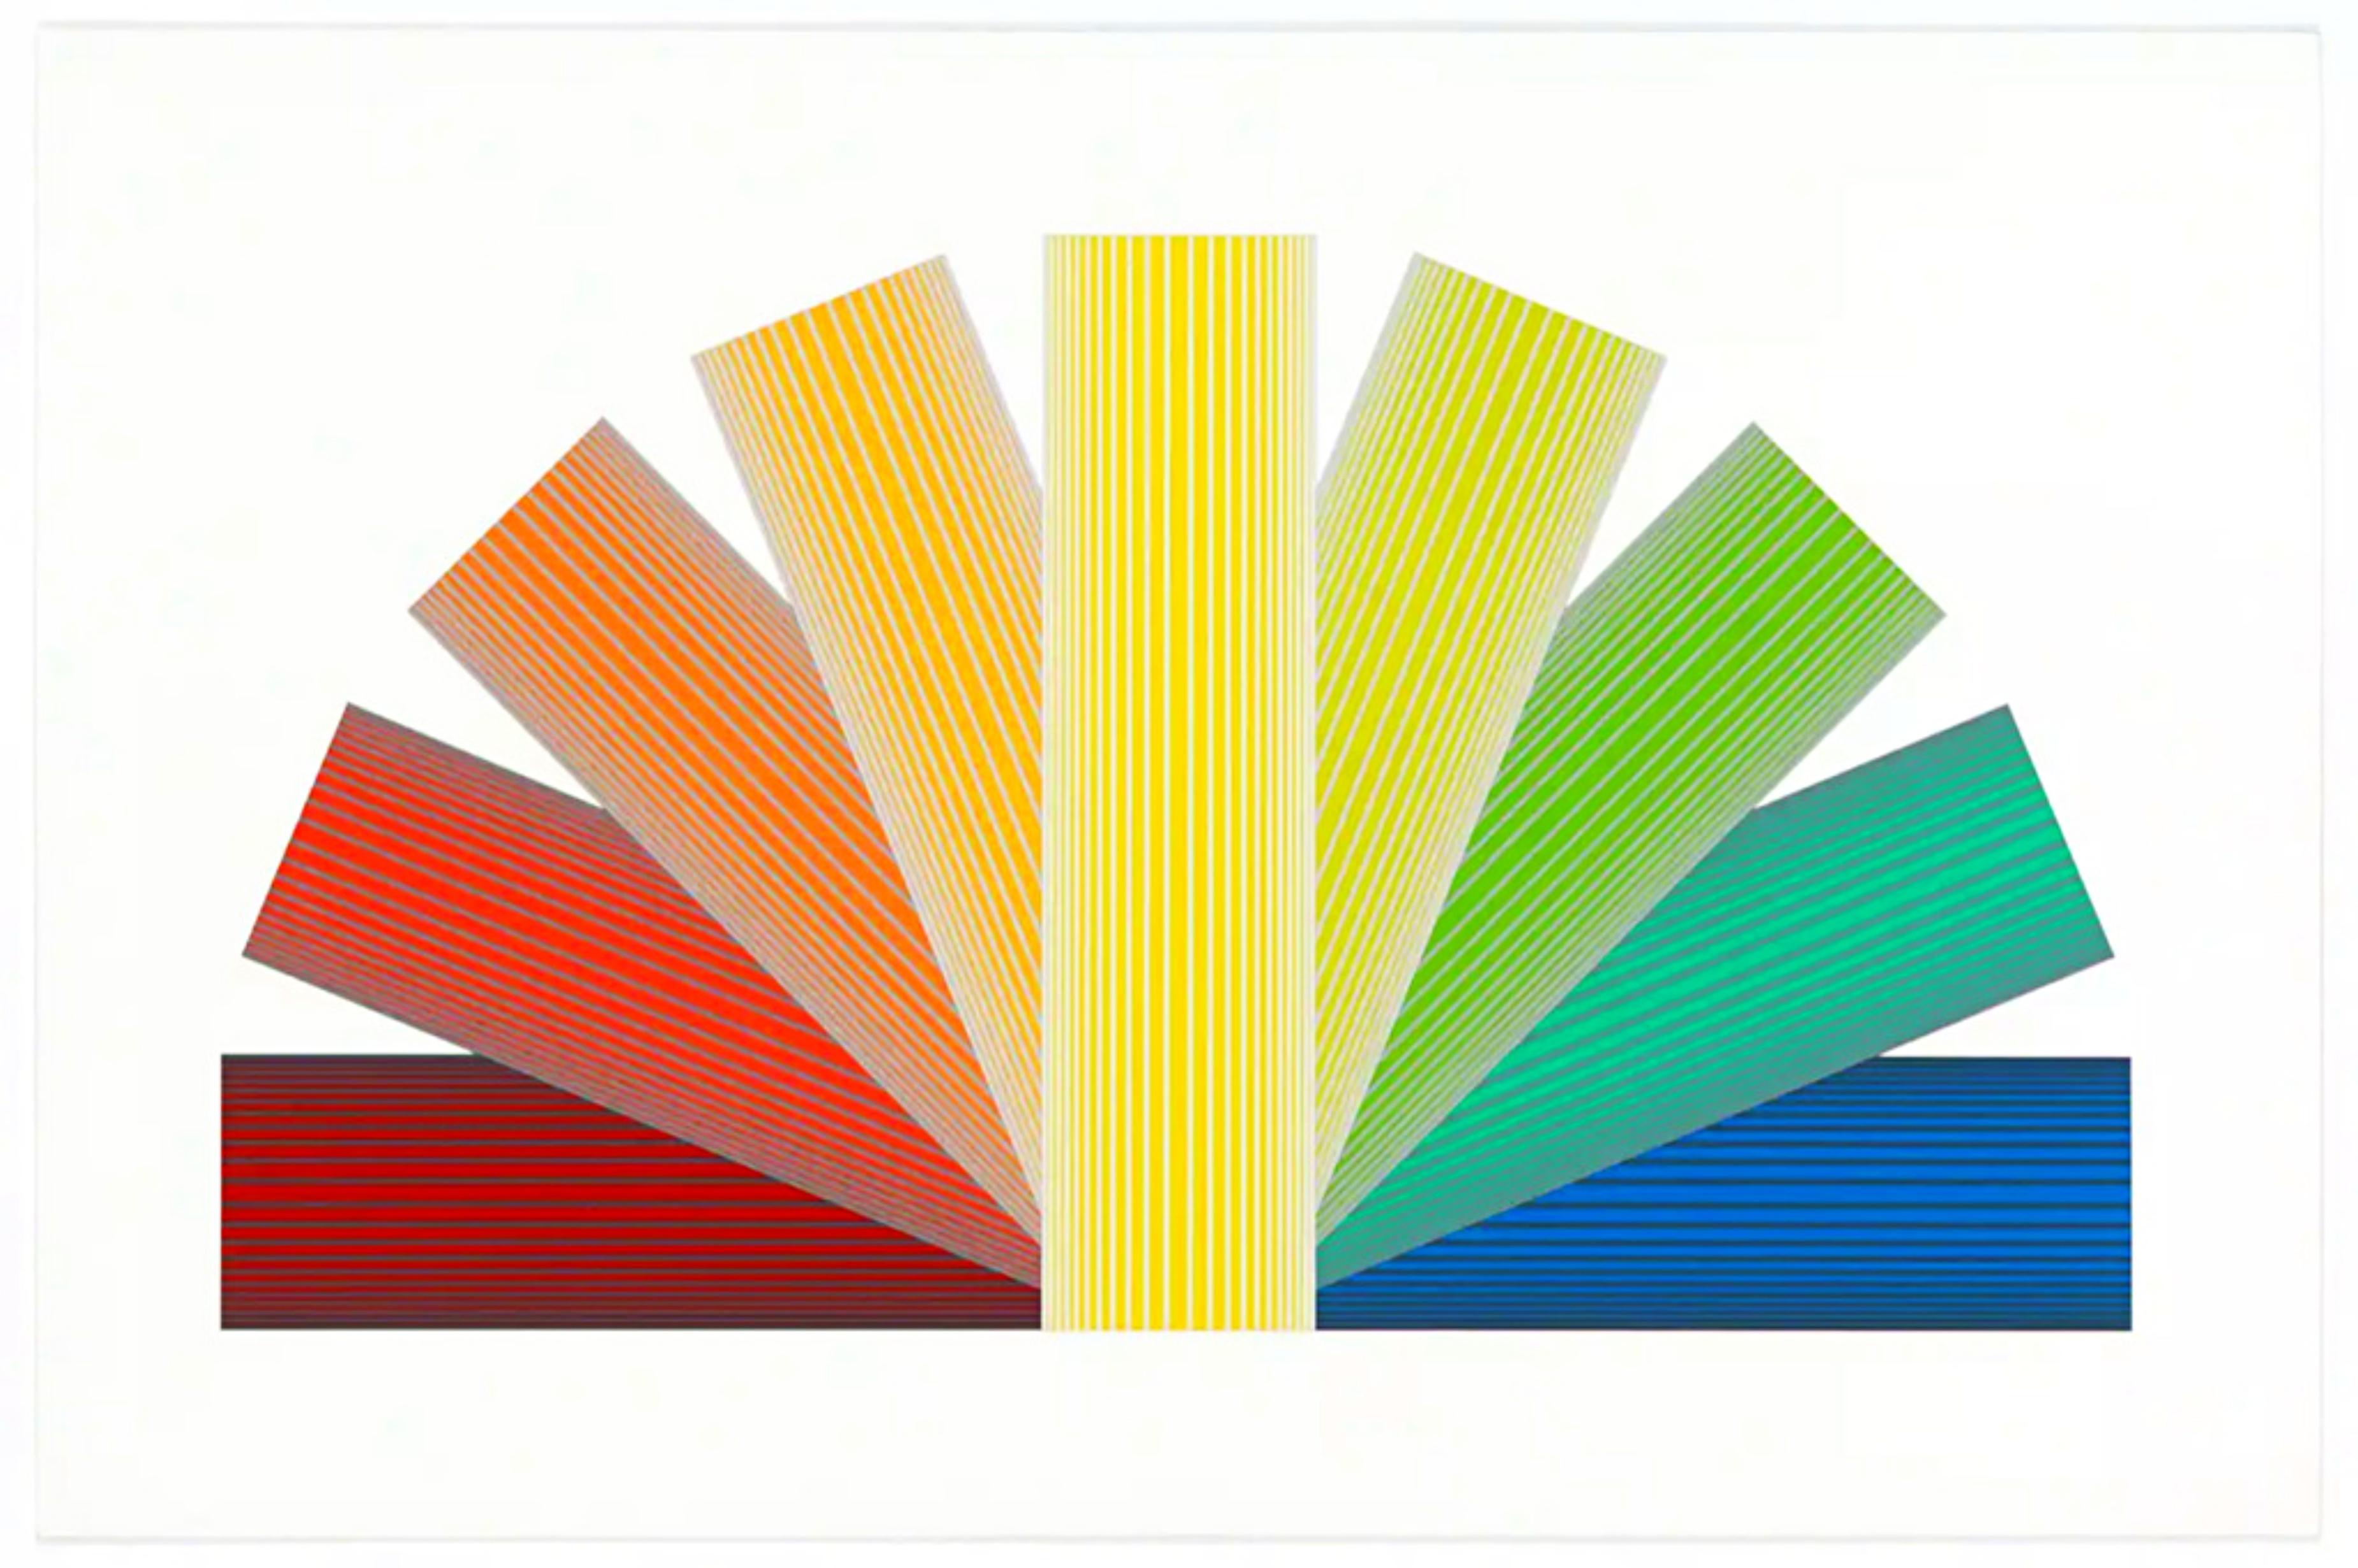 RICHARD ANUSZKIEWICZ
Arc-en-ciel teinté de gris, 1992
Assemblage avec sérigraphie et lithographie en 14 couleurs
Edition de 40 exemplaires
Signé au crayon et numéroté 11/40 au recto.
Cadre inclus : élégamment encadré dans un cadre en bois
Magnifique